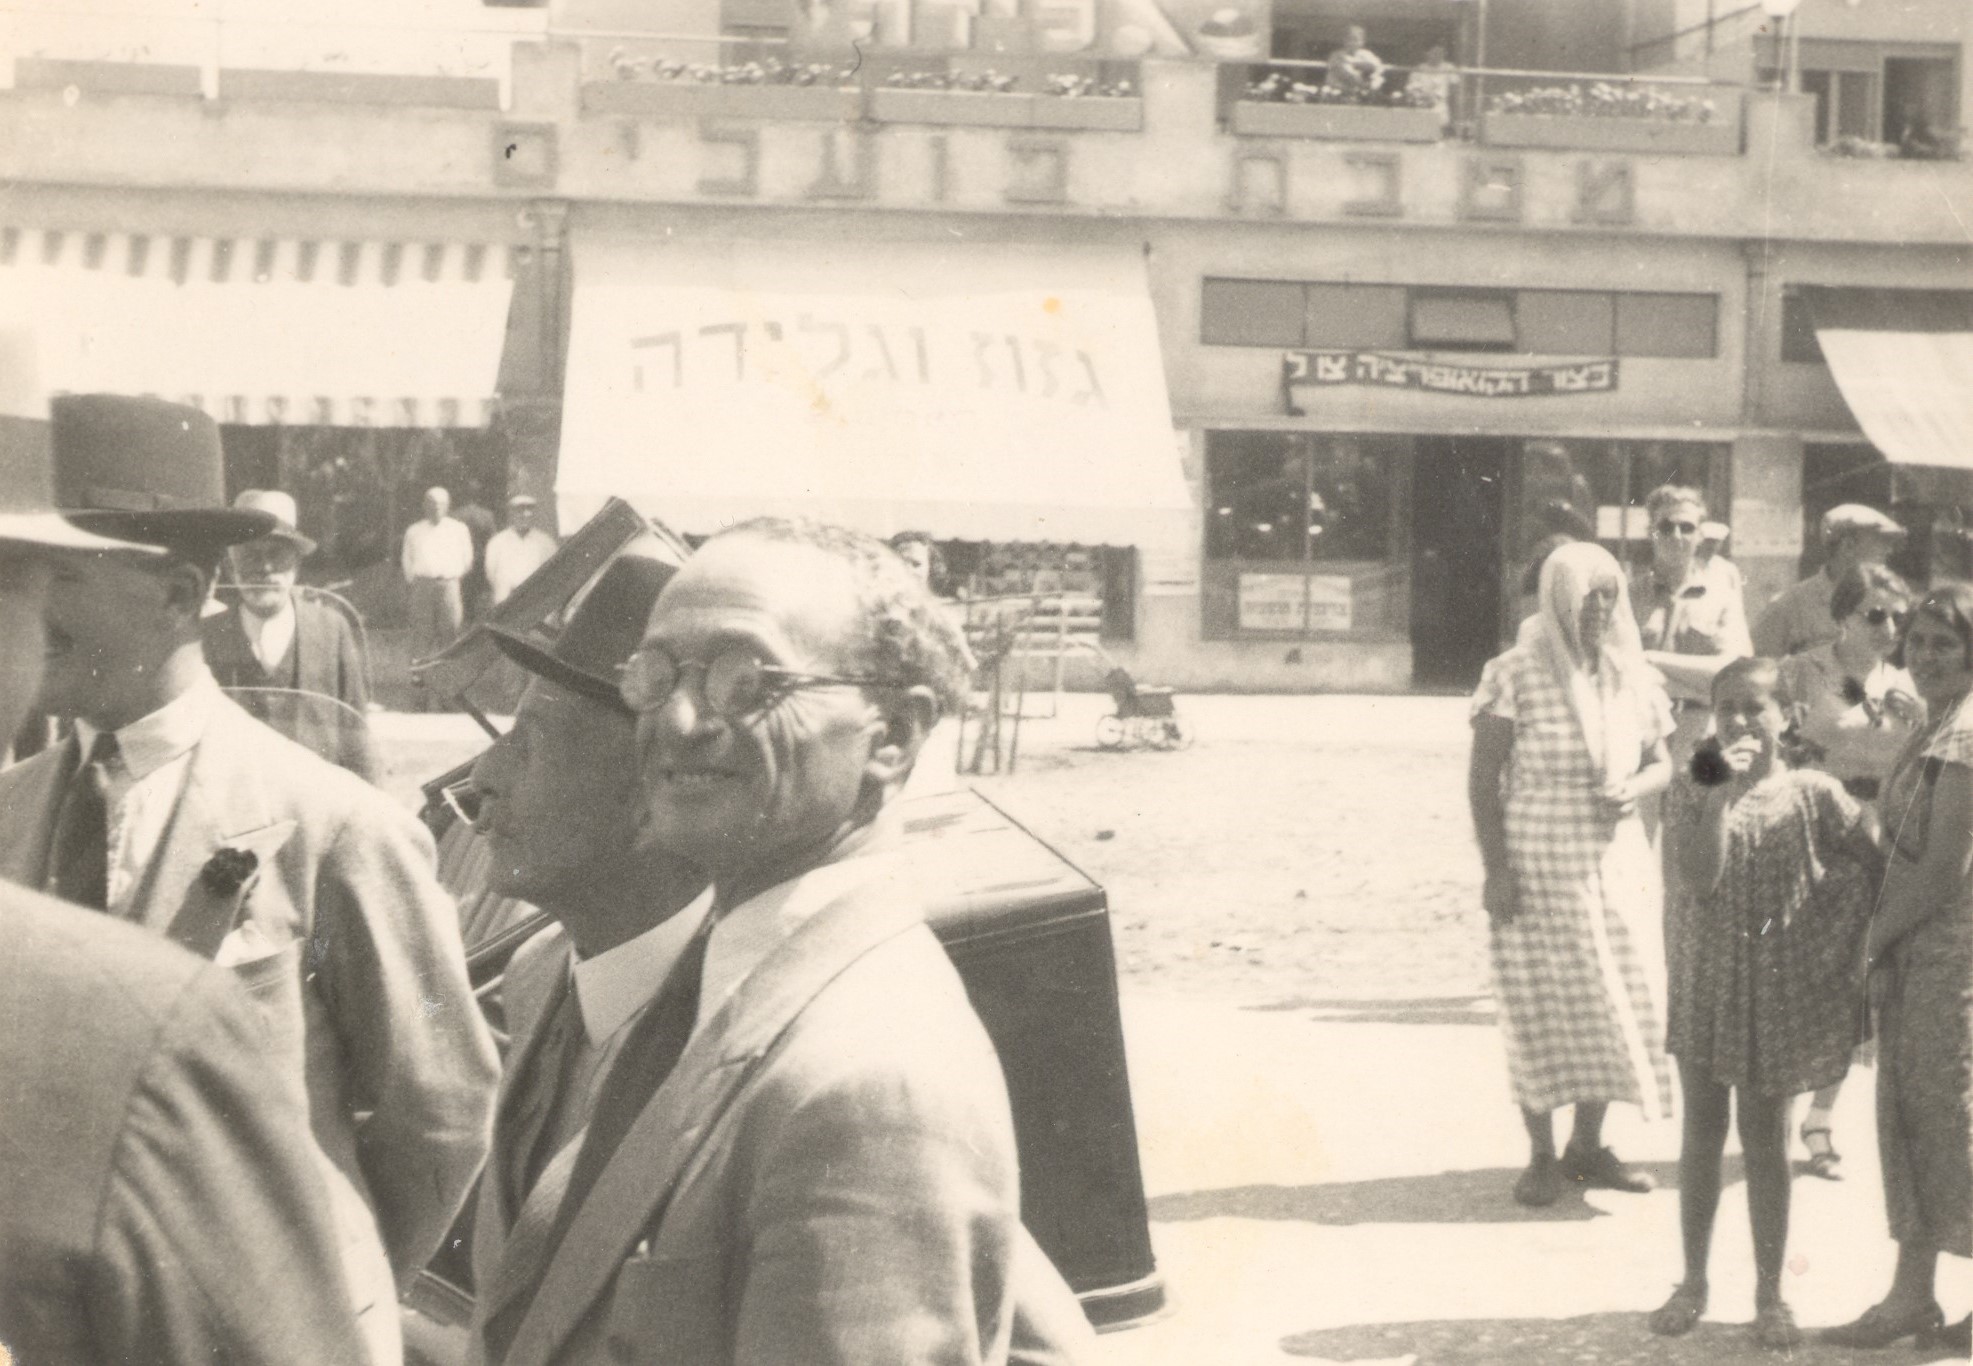 1937 - הנציב העליון, סר ארתור ווקופ, בסיור ברחוב אחוזה ברעננה לצדו ברוך אוסטרובסקי. ברקע הבנין ברחוב אחוזה פינת רחוב יהושע חנקין.